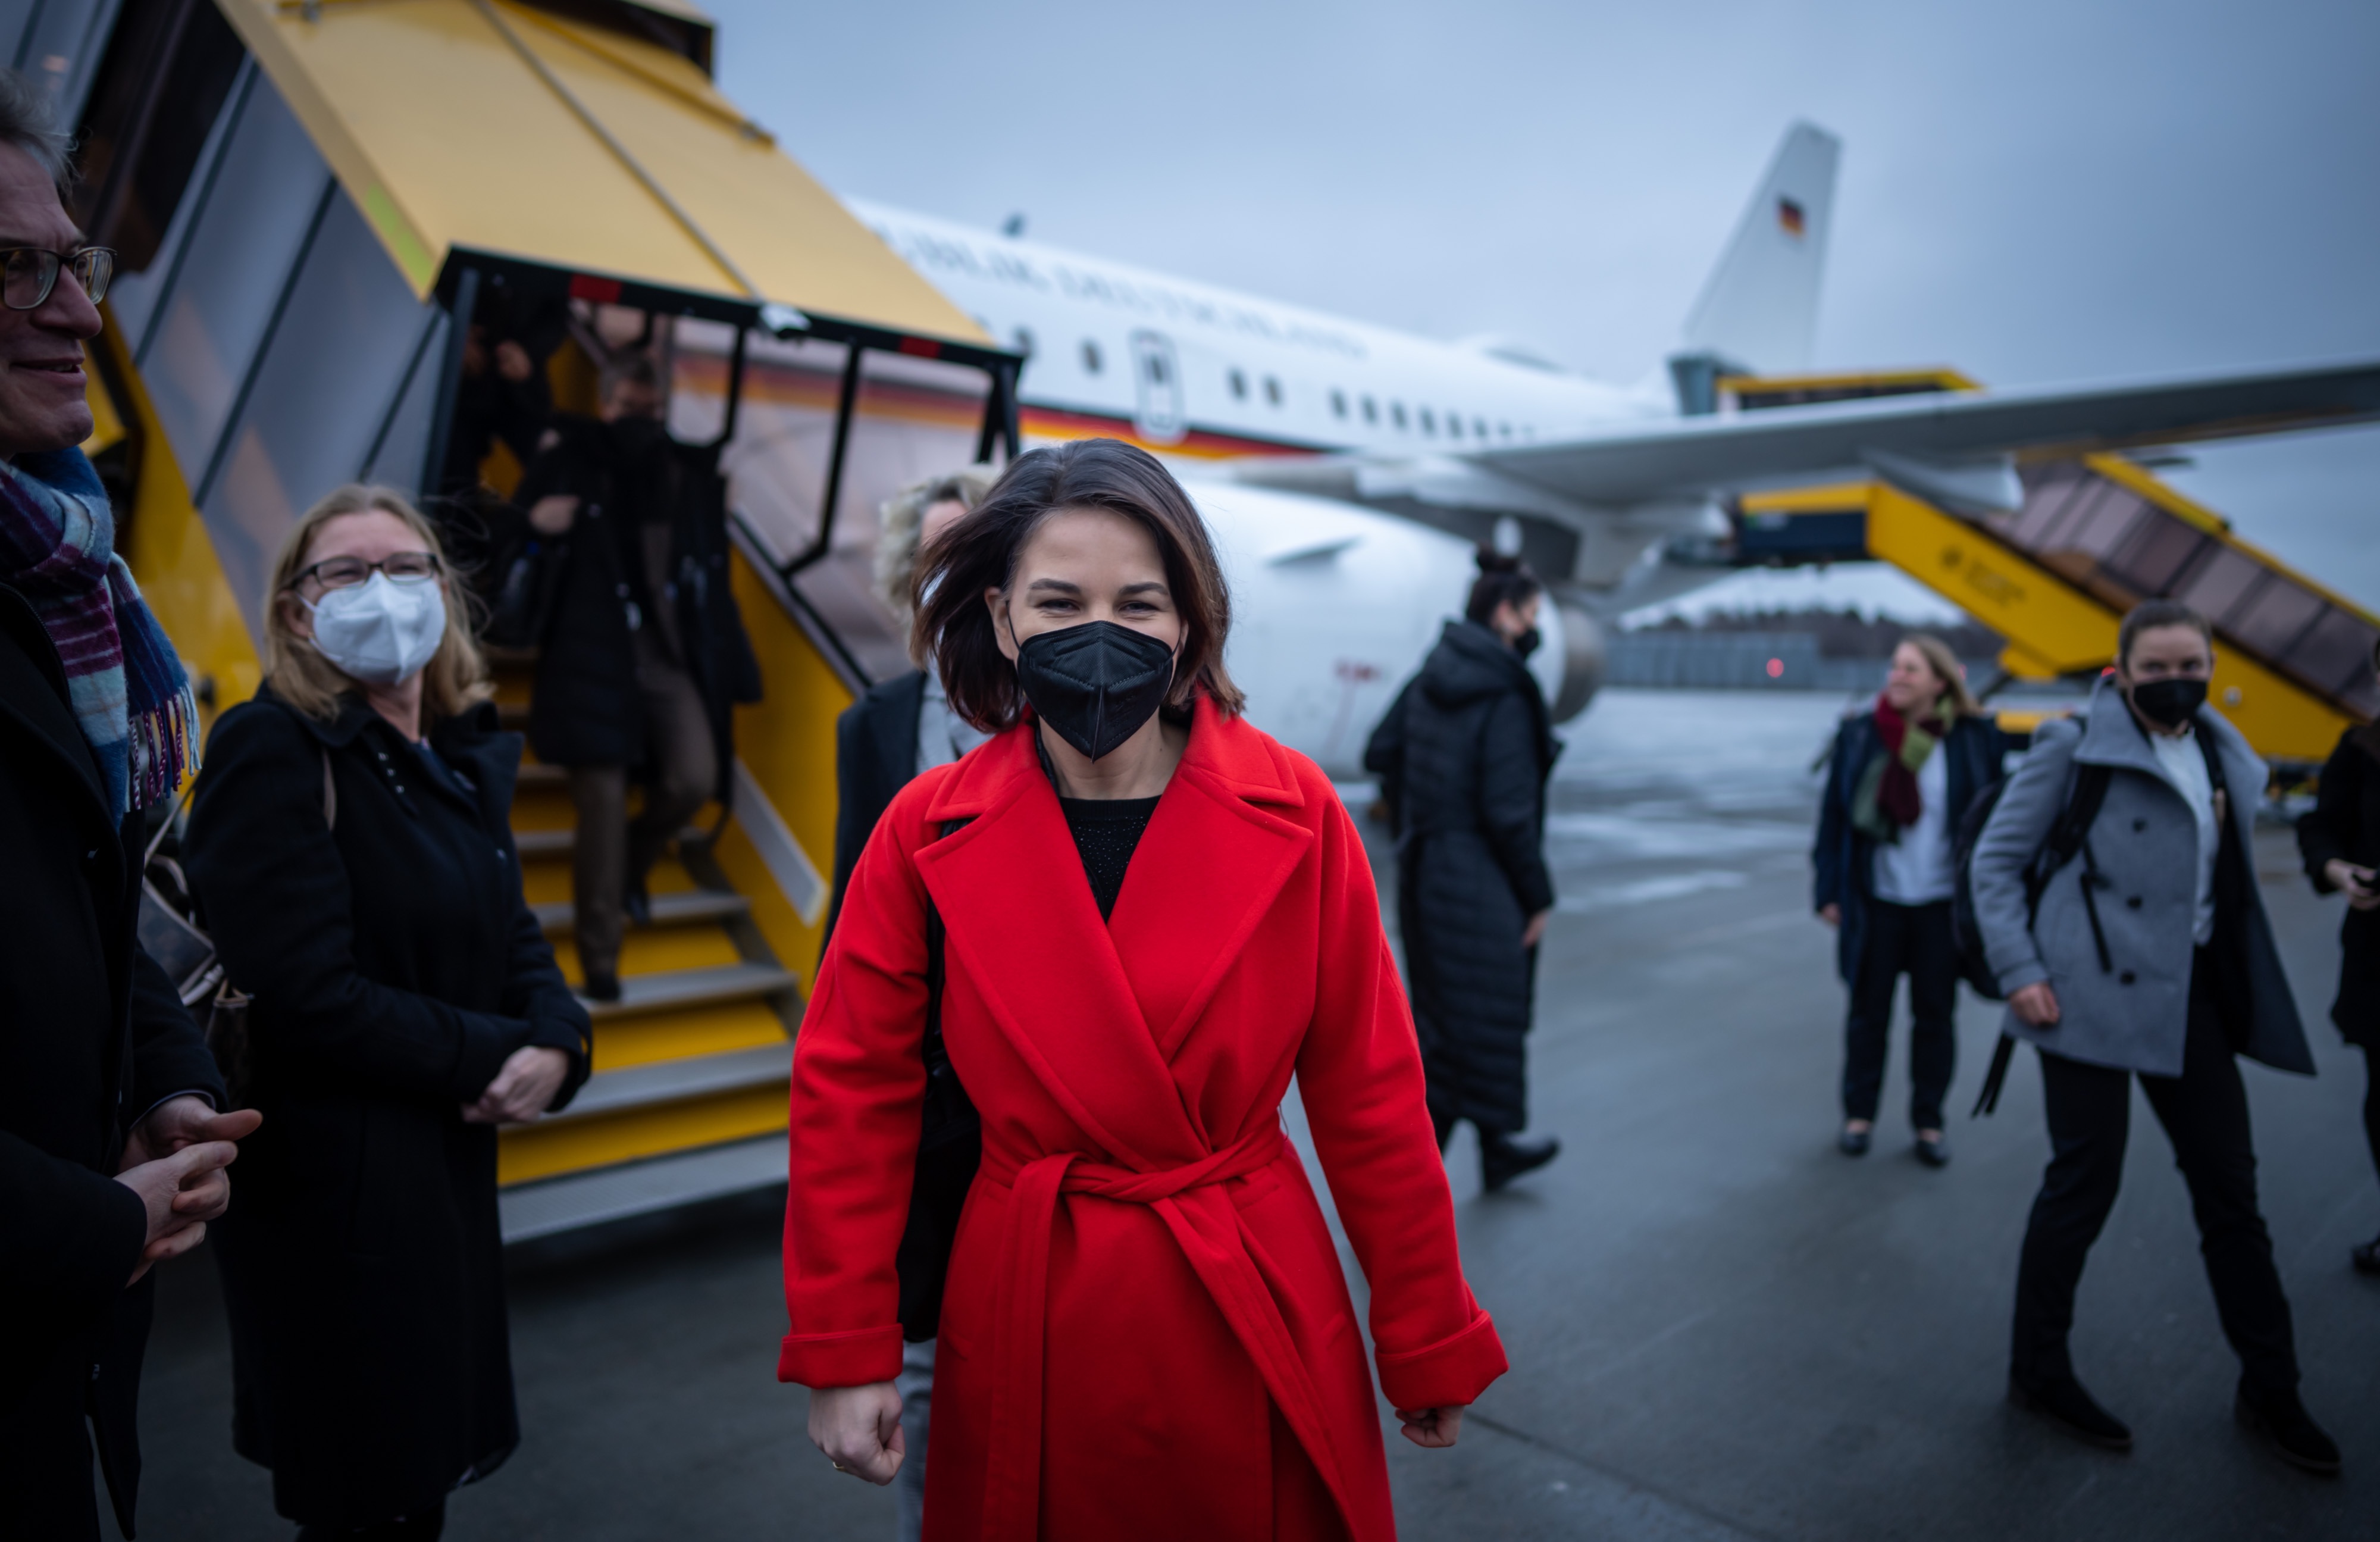  وزيرة الخارجية الألمانية آنالينا باربوك تسير على مدرج المطار بعد نزولها من طائرتها (د ب أ)